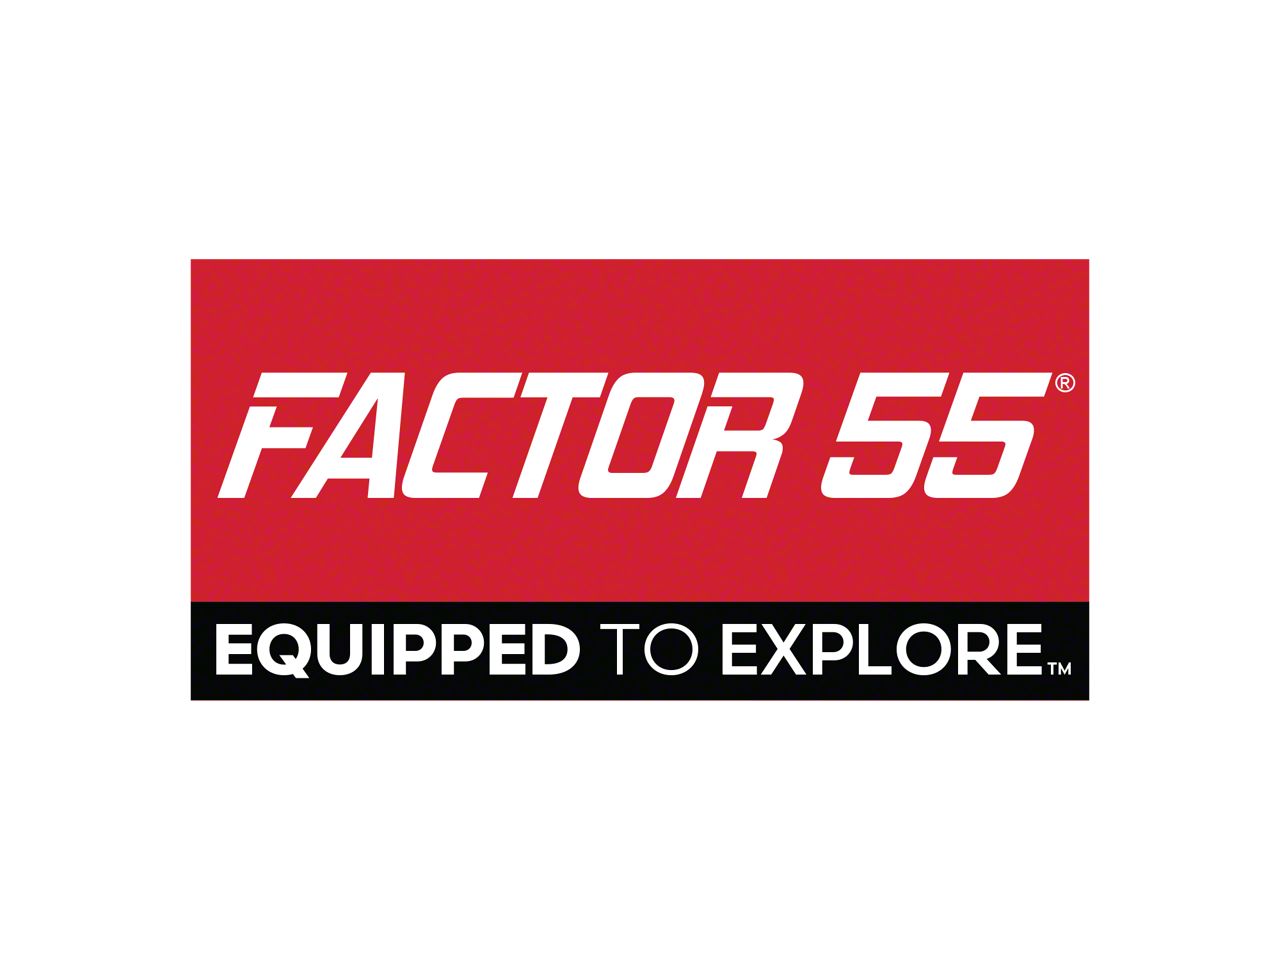 Factor 55 Parts